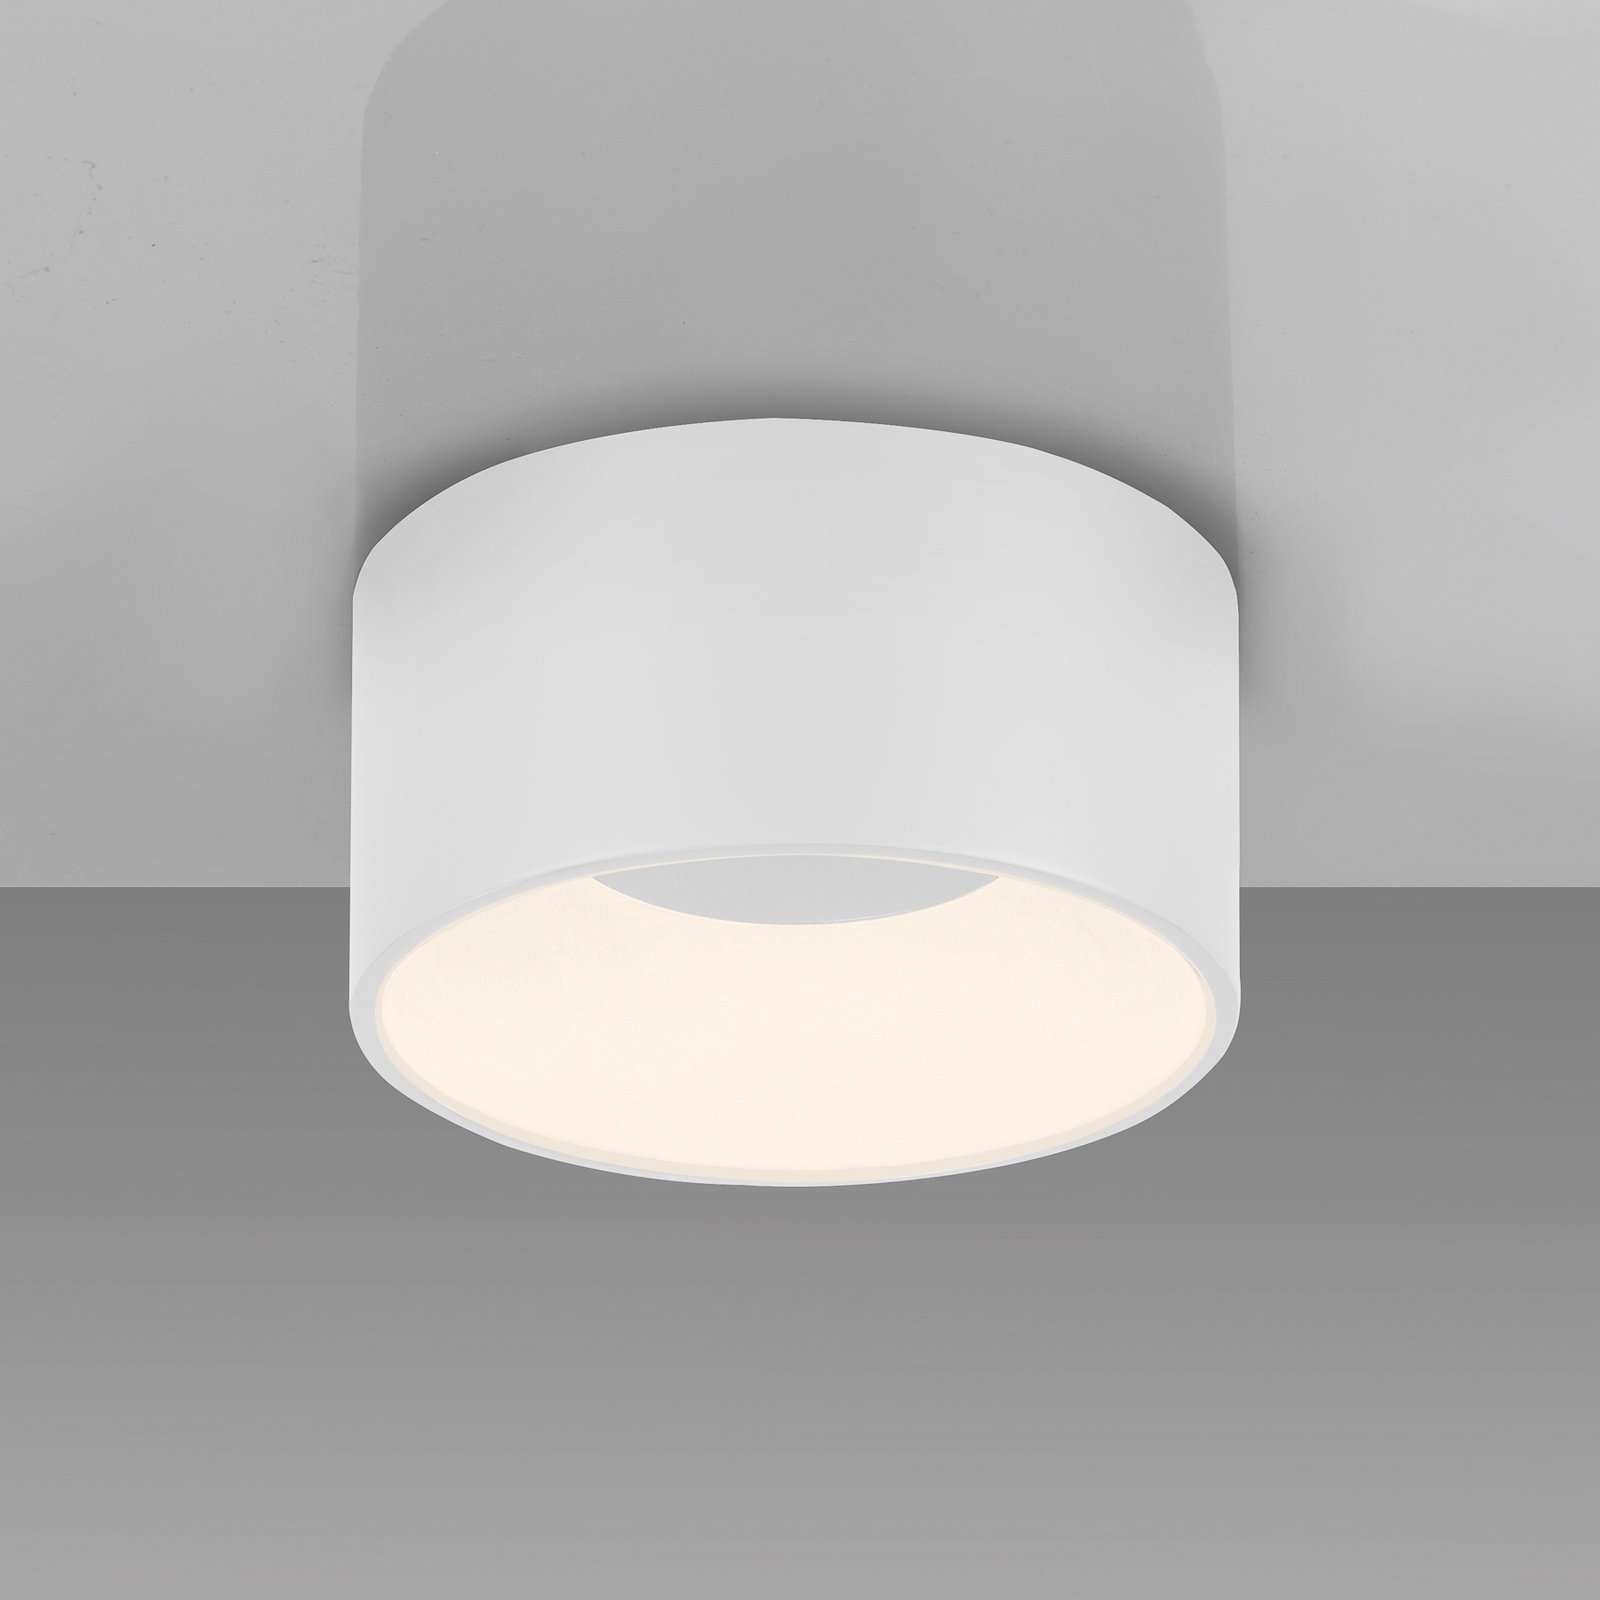 JUST LIGHT. Tanika LED-taklampa, vit, Ø 16 cm, dimbar